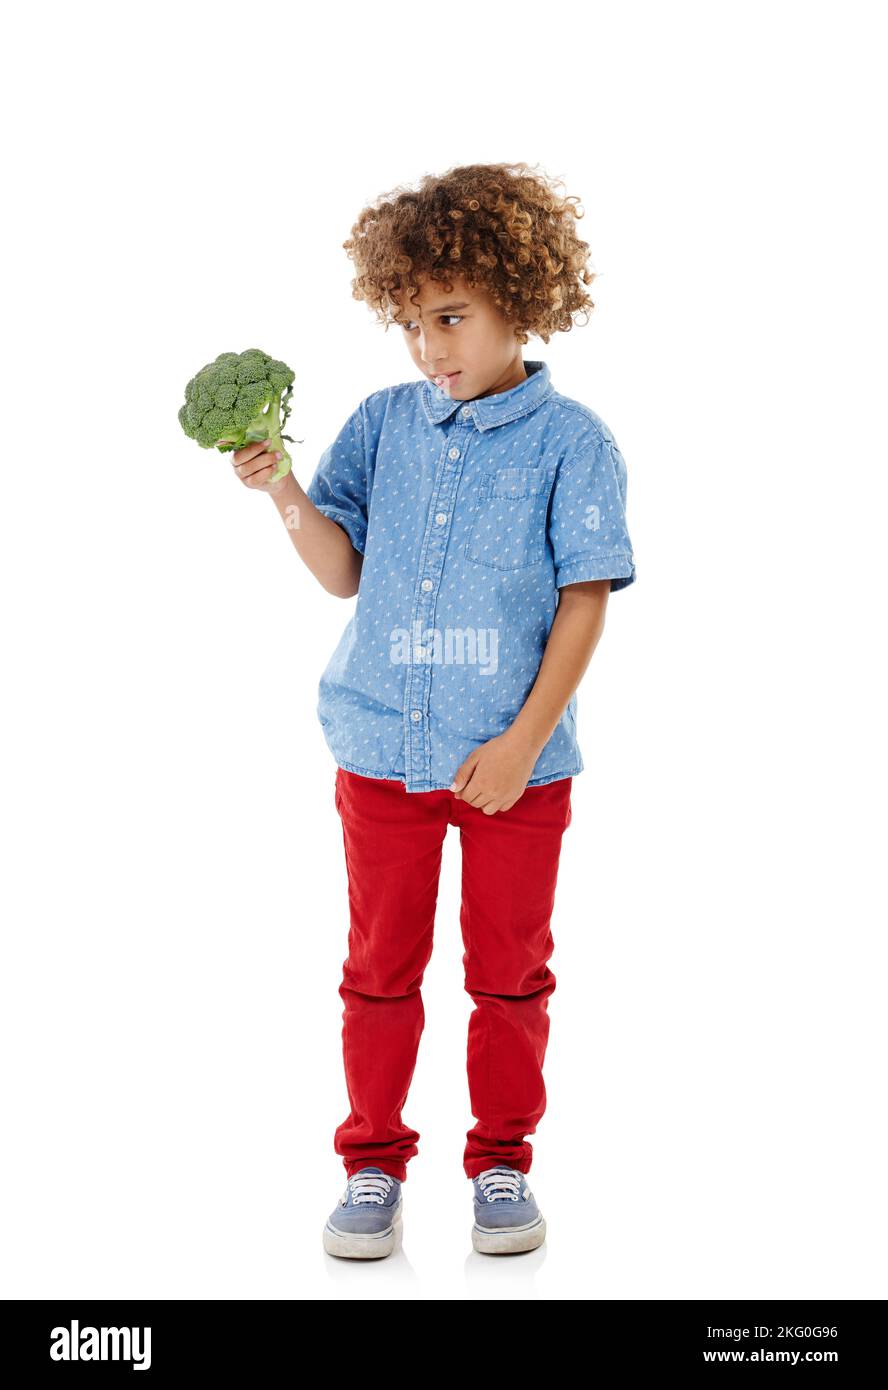 Wie wäre es mit einem Burger stattdessen. Studioaufnahme eines niedlichen kleinen Jungen, der vor weißem Hintergrund zögerlich auf Brokkoli schaut. Stockfoto